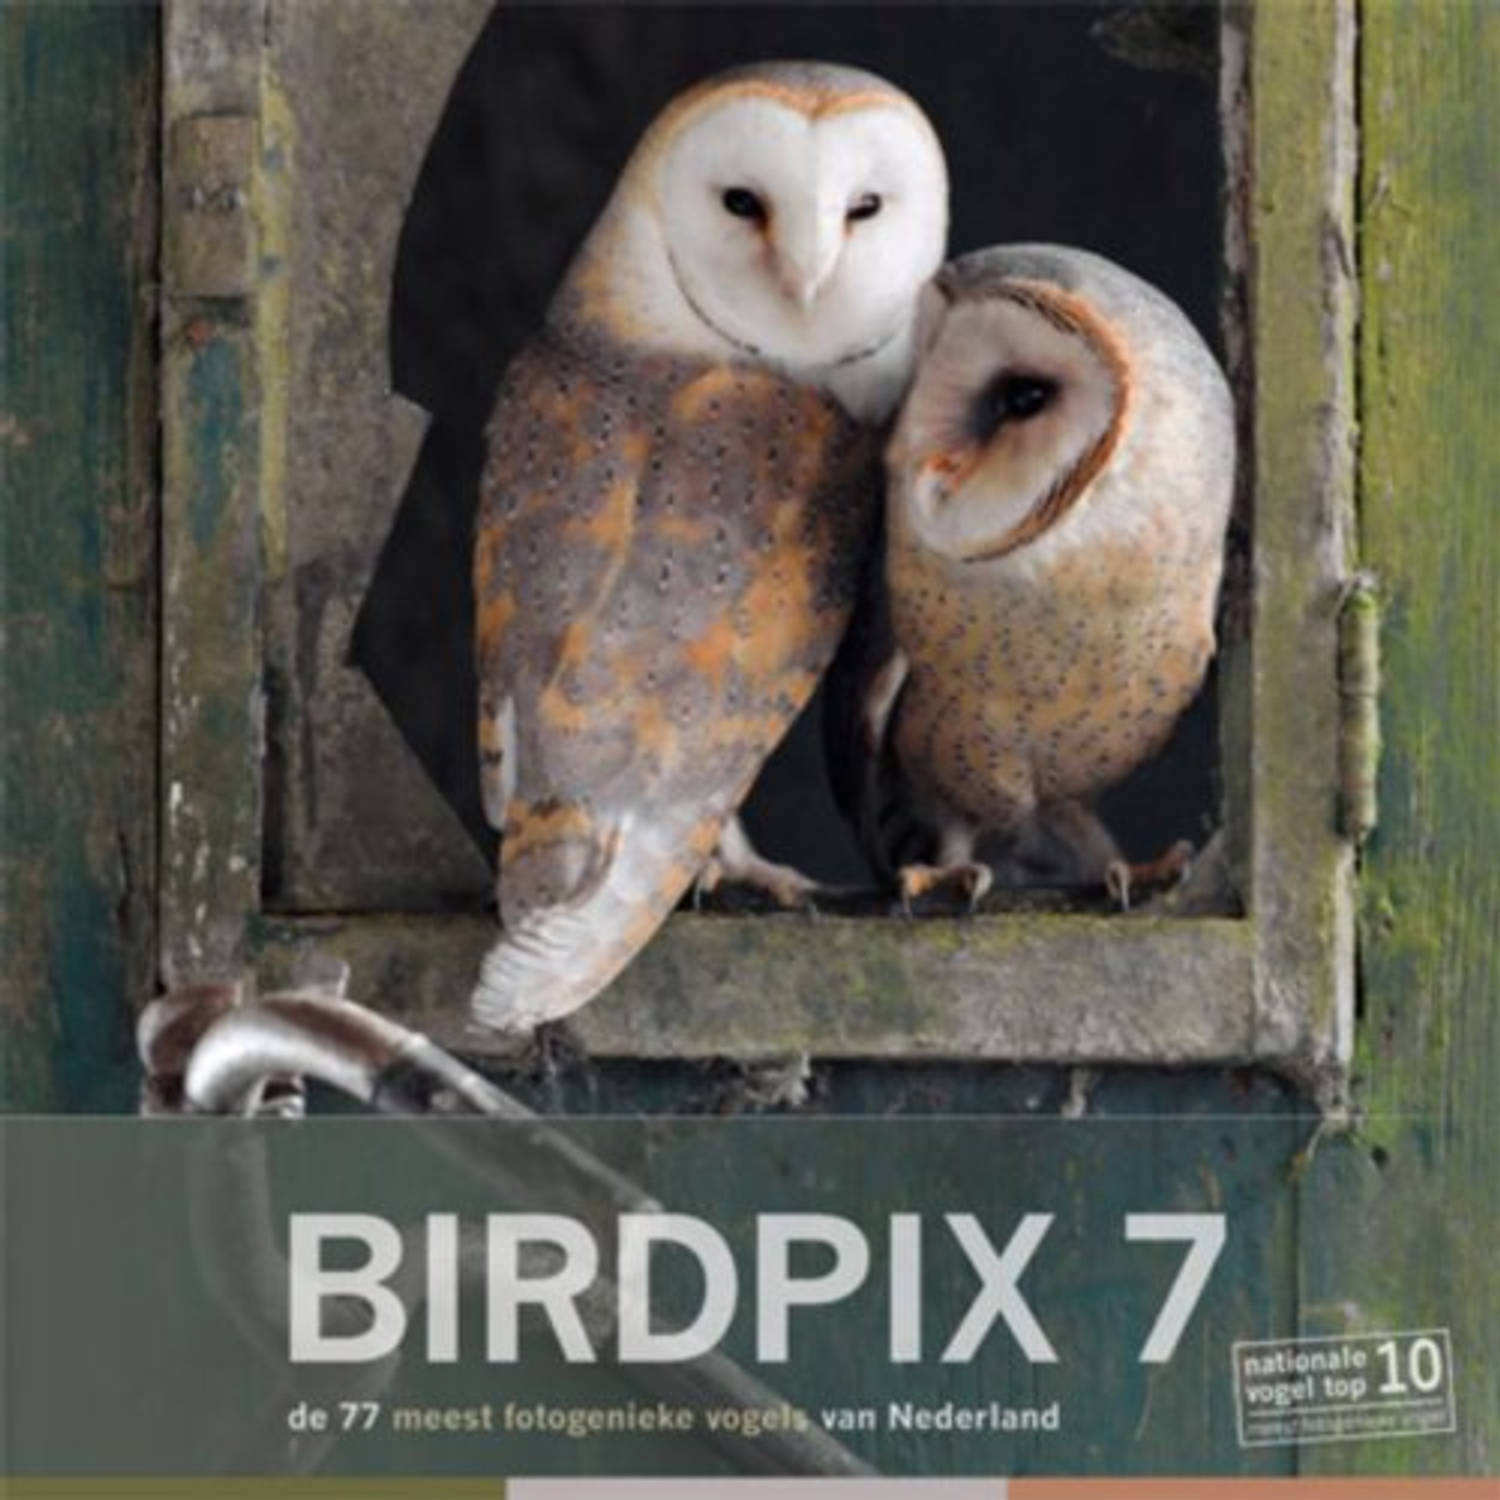 Paagman birdpix / 7 - birdpix